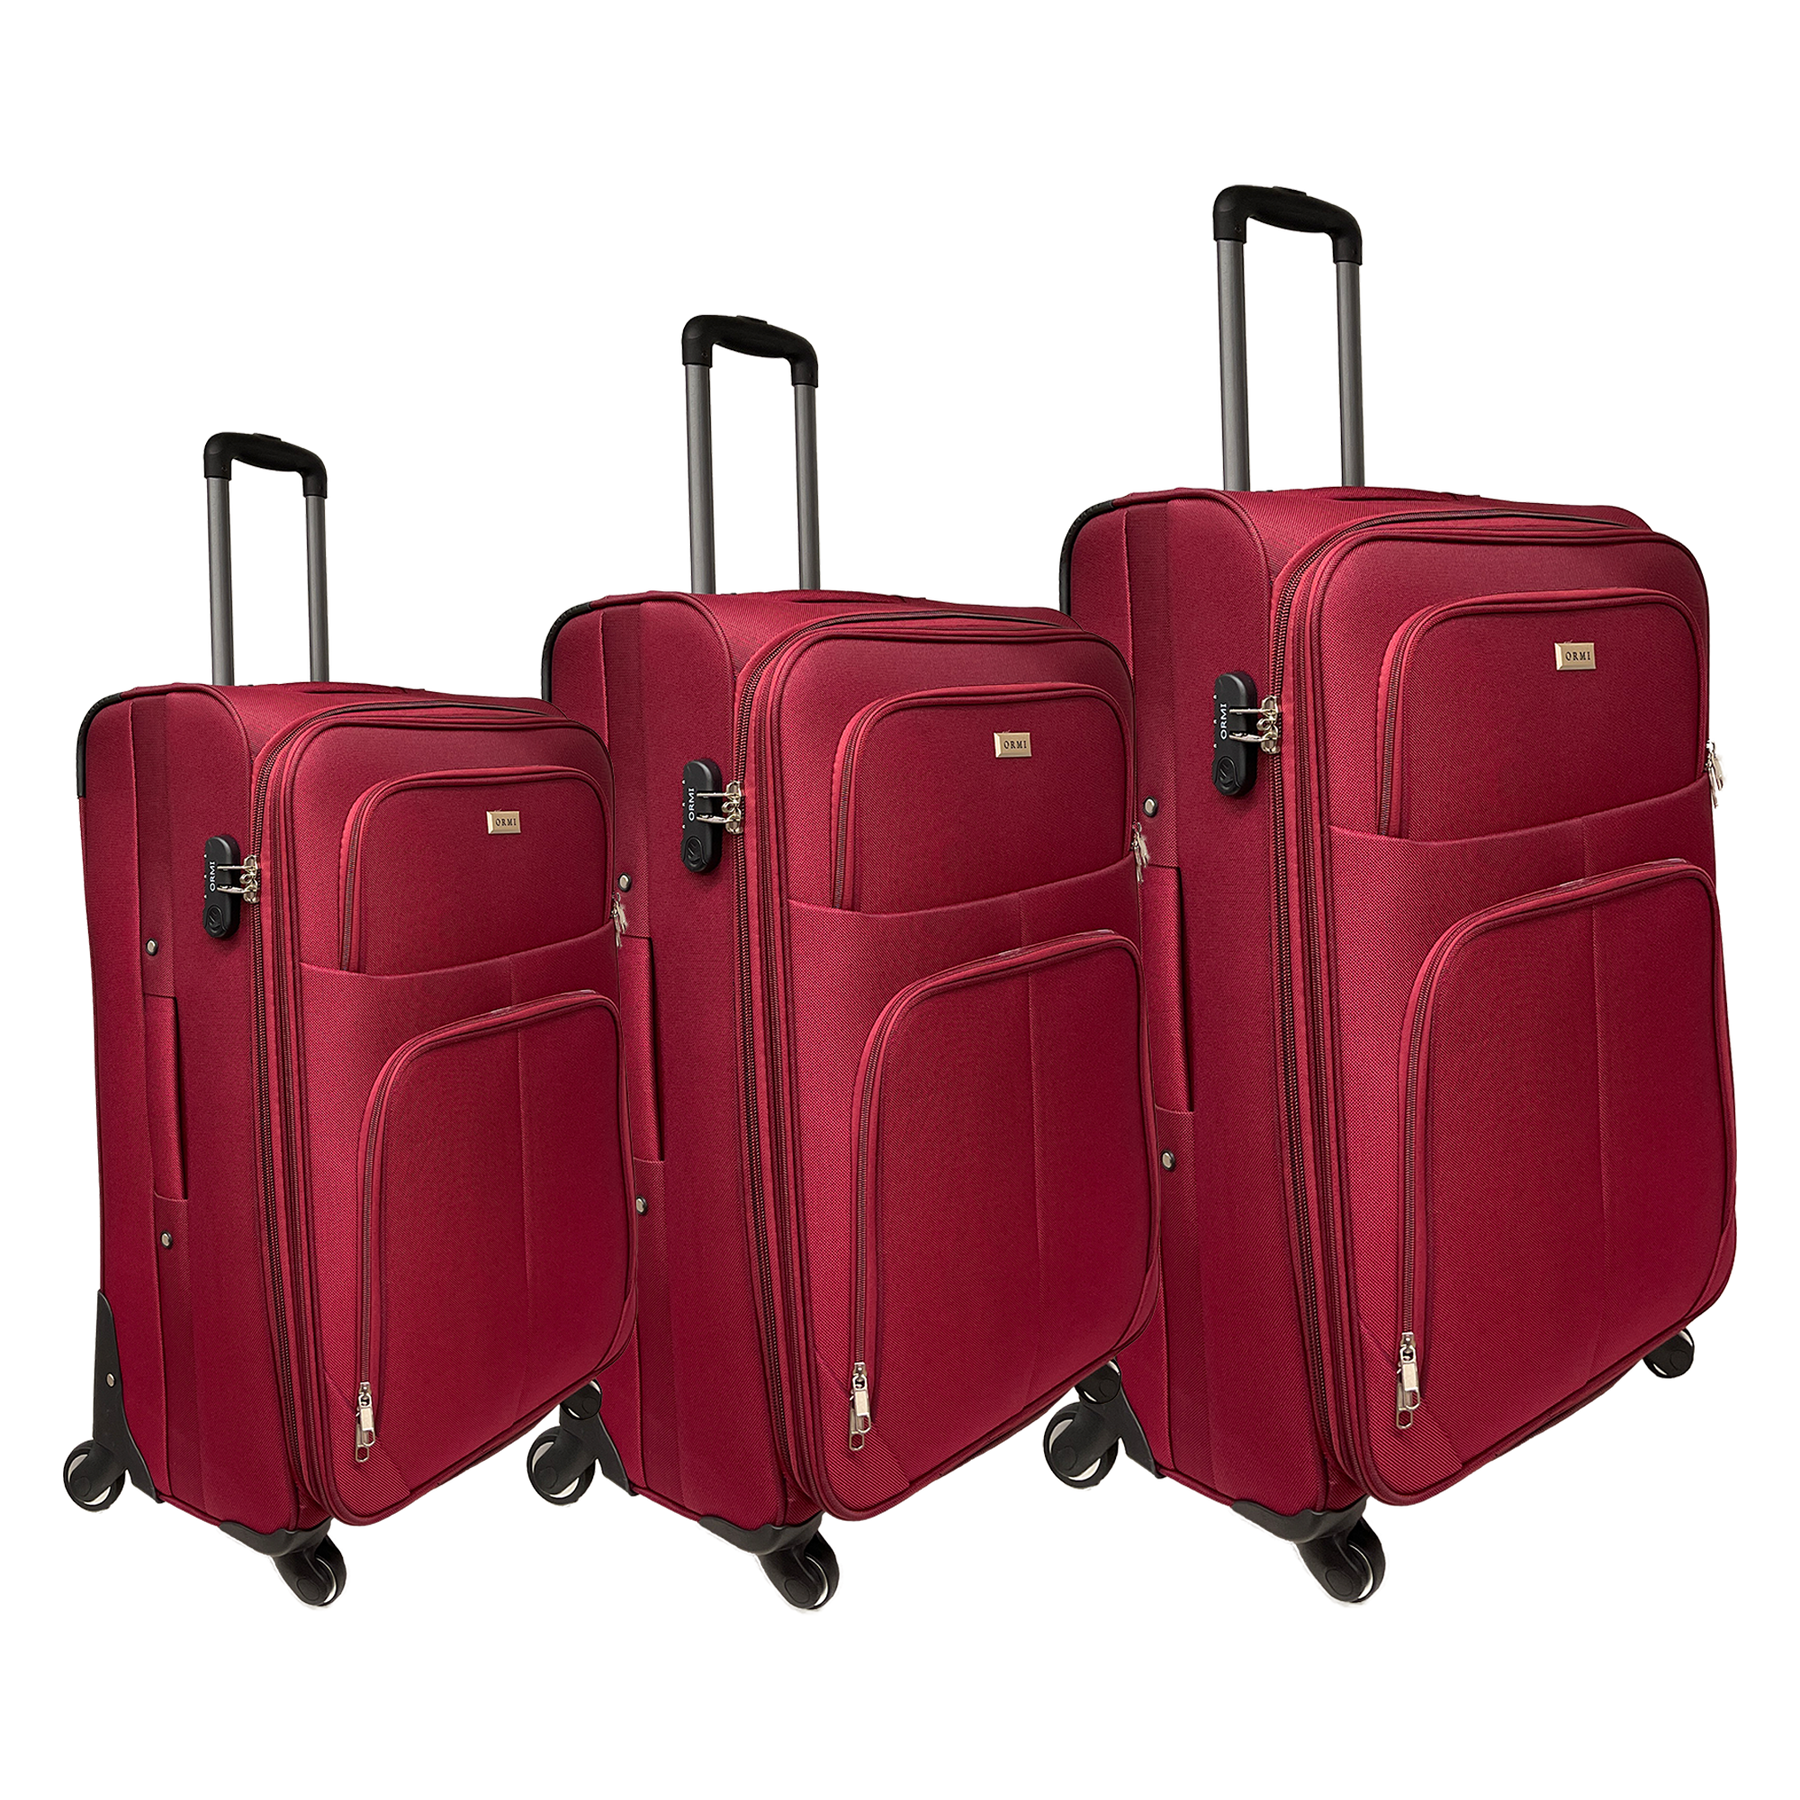 Ustaw 3 walizki Półajniki rozszerzające się w szokującą tkaninę | Wymiary: małe 55 cm, średnio 65 cm, 75 cm dużych